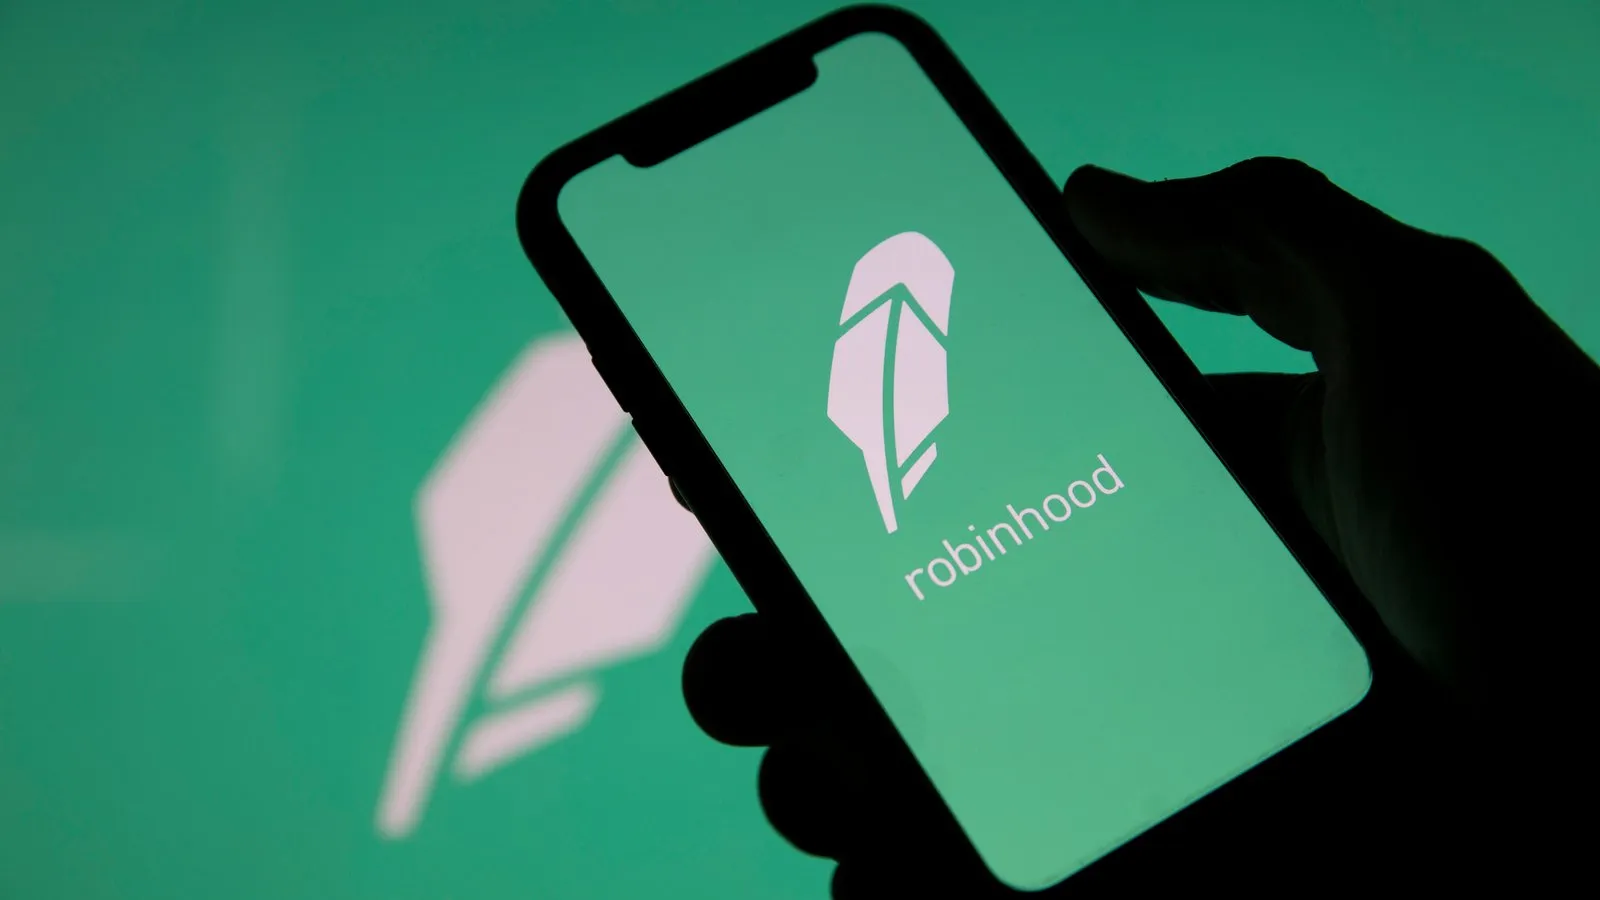 Robinhood es una popular aplicación para operar con criptomonedas y acciones. Imagen: Shutterstock